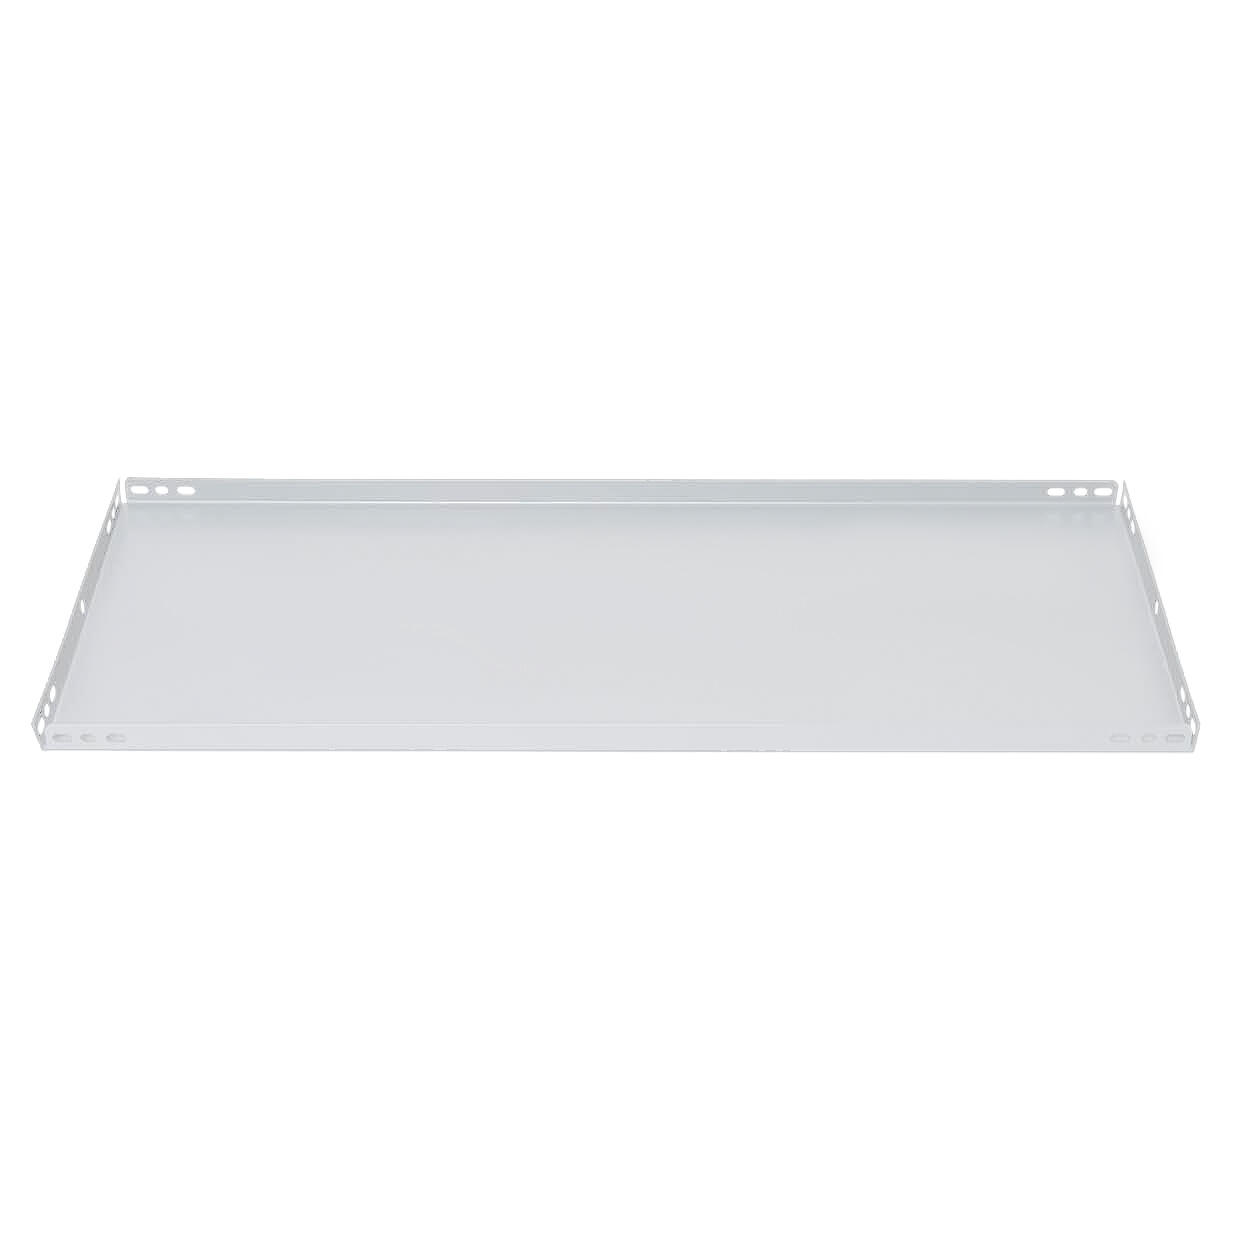 Balda recta para sistema de estantes de acero blanco de 90x30cm